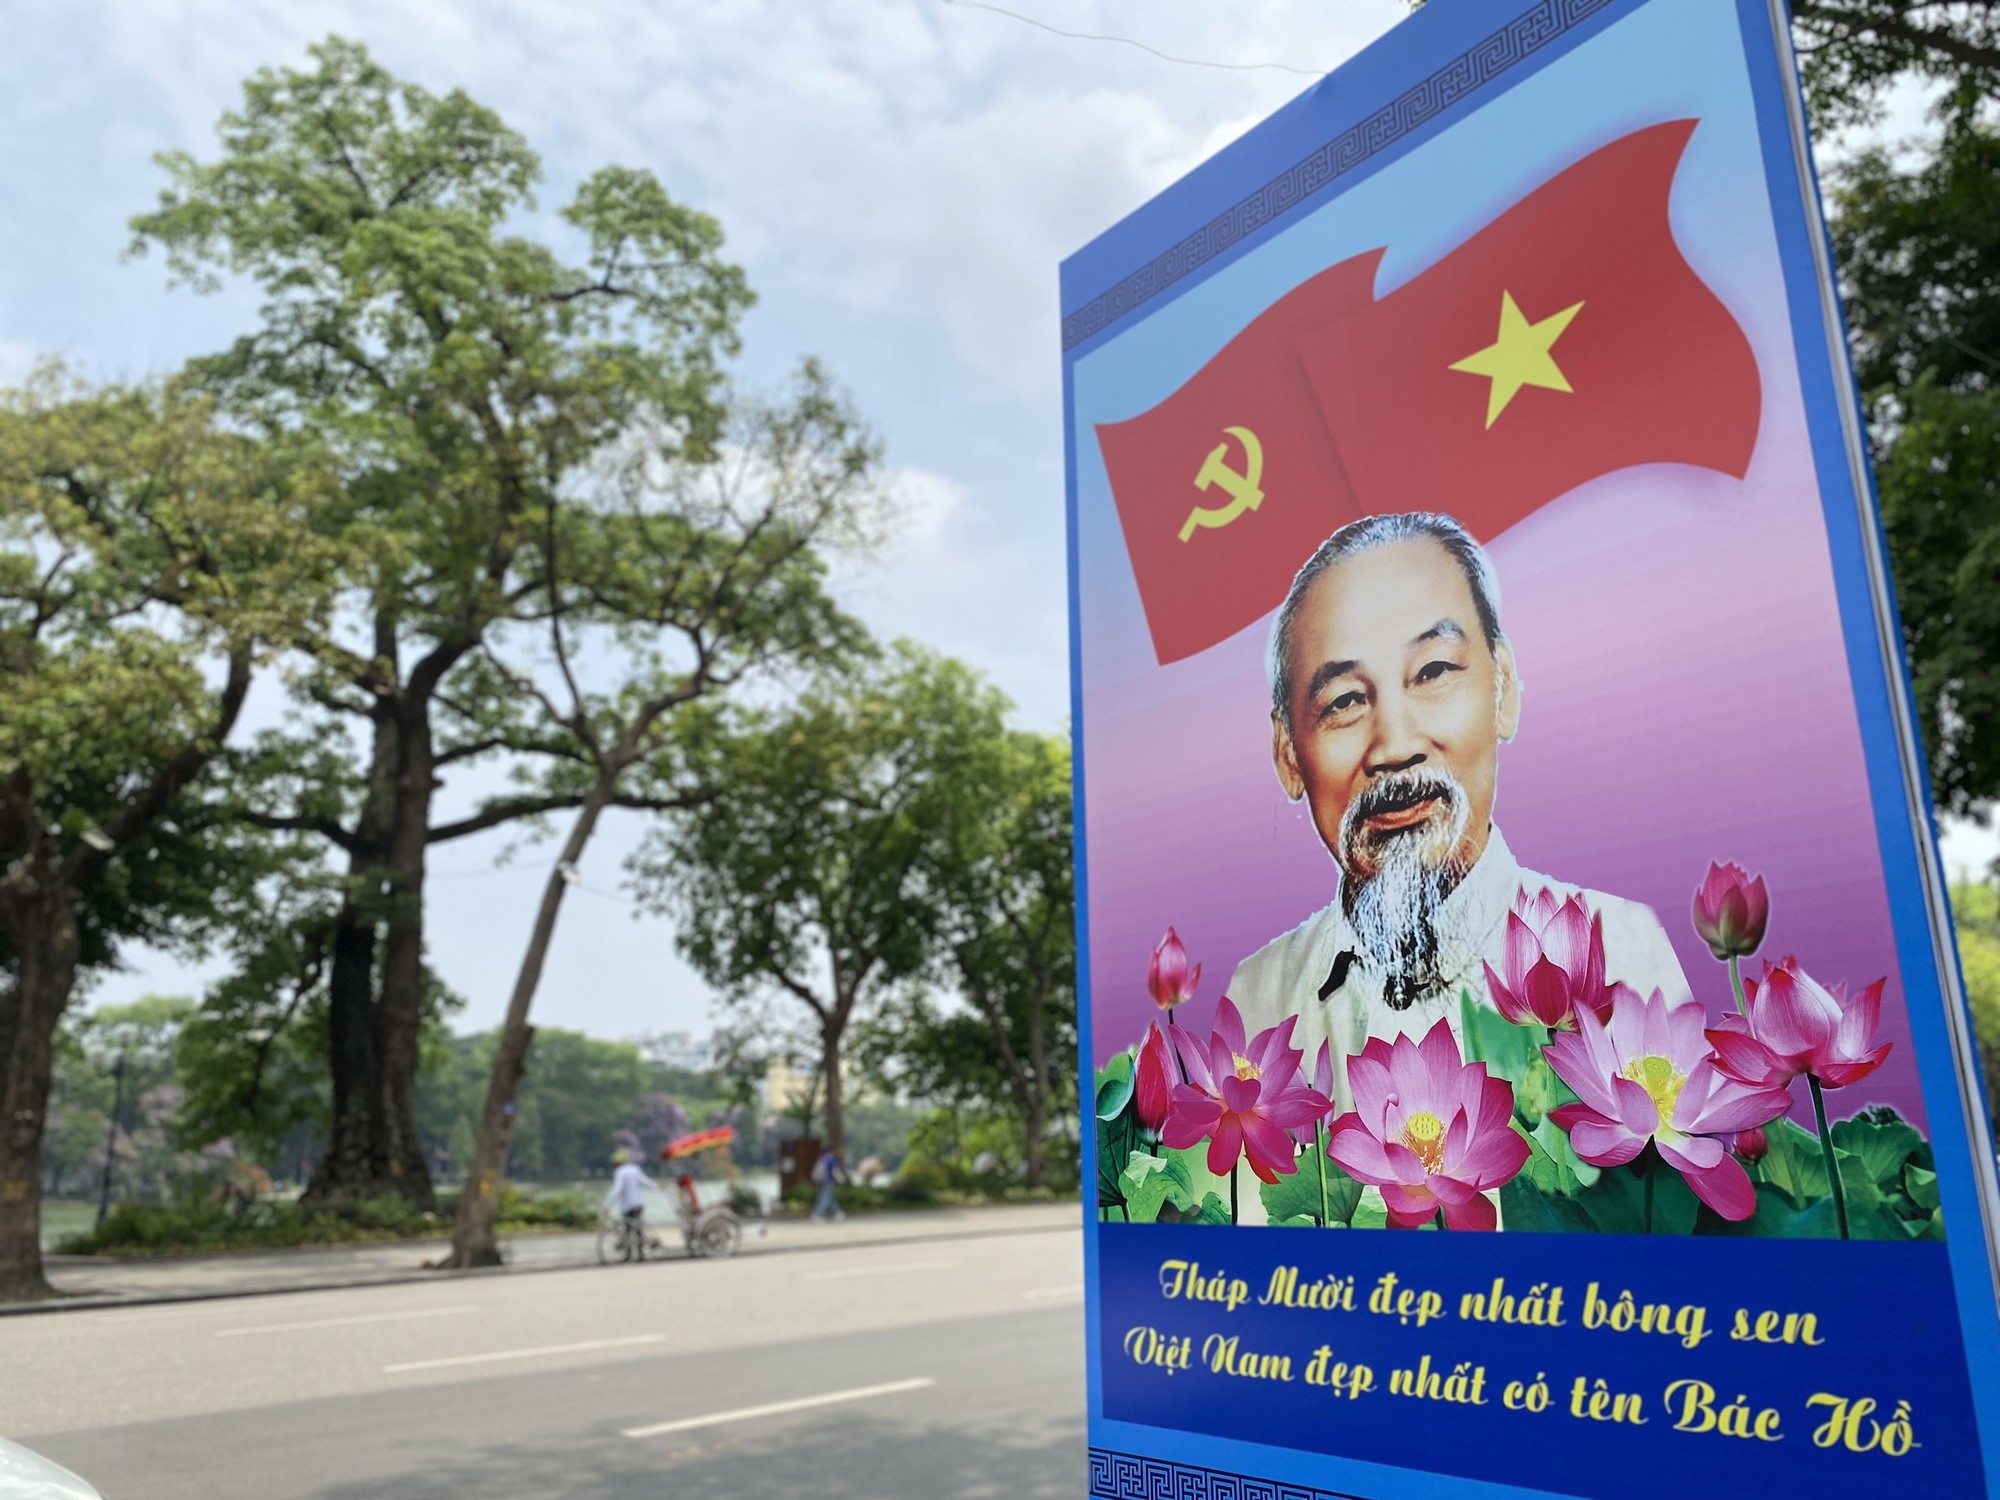 Những biểu ngữ thể hiện niềm tự hào như &quot;Tháp Mười đẹp nhất bông sen/Việt Nam đẹp nhất có tên bác Hồ&quot; được in ở tấm pano lớn treo dọc các tuyến phố lớn. Ảnh: Lê An/Mekong ASEAN.